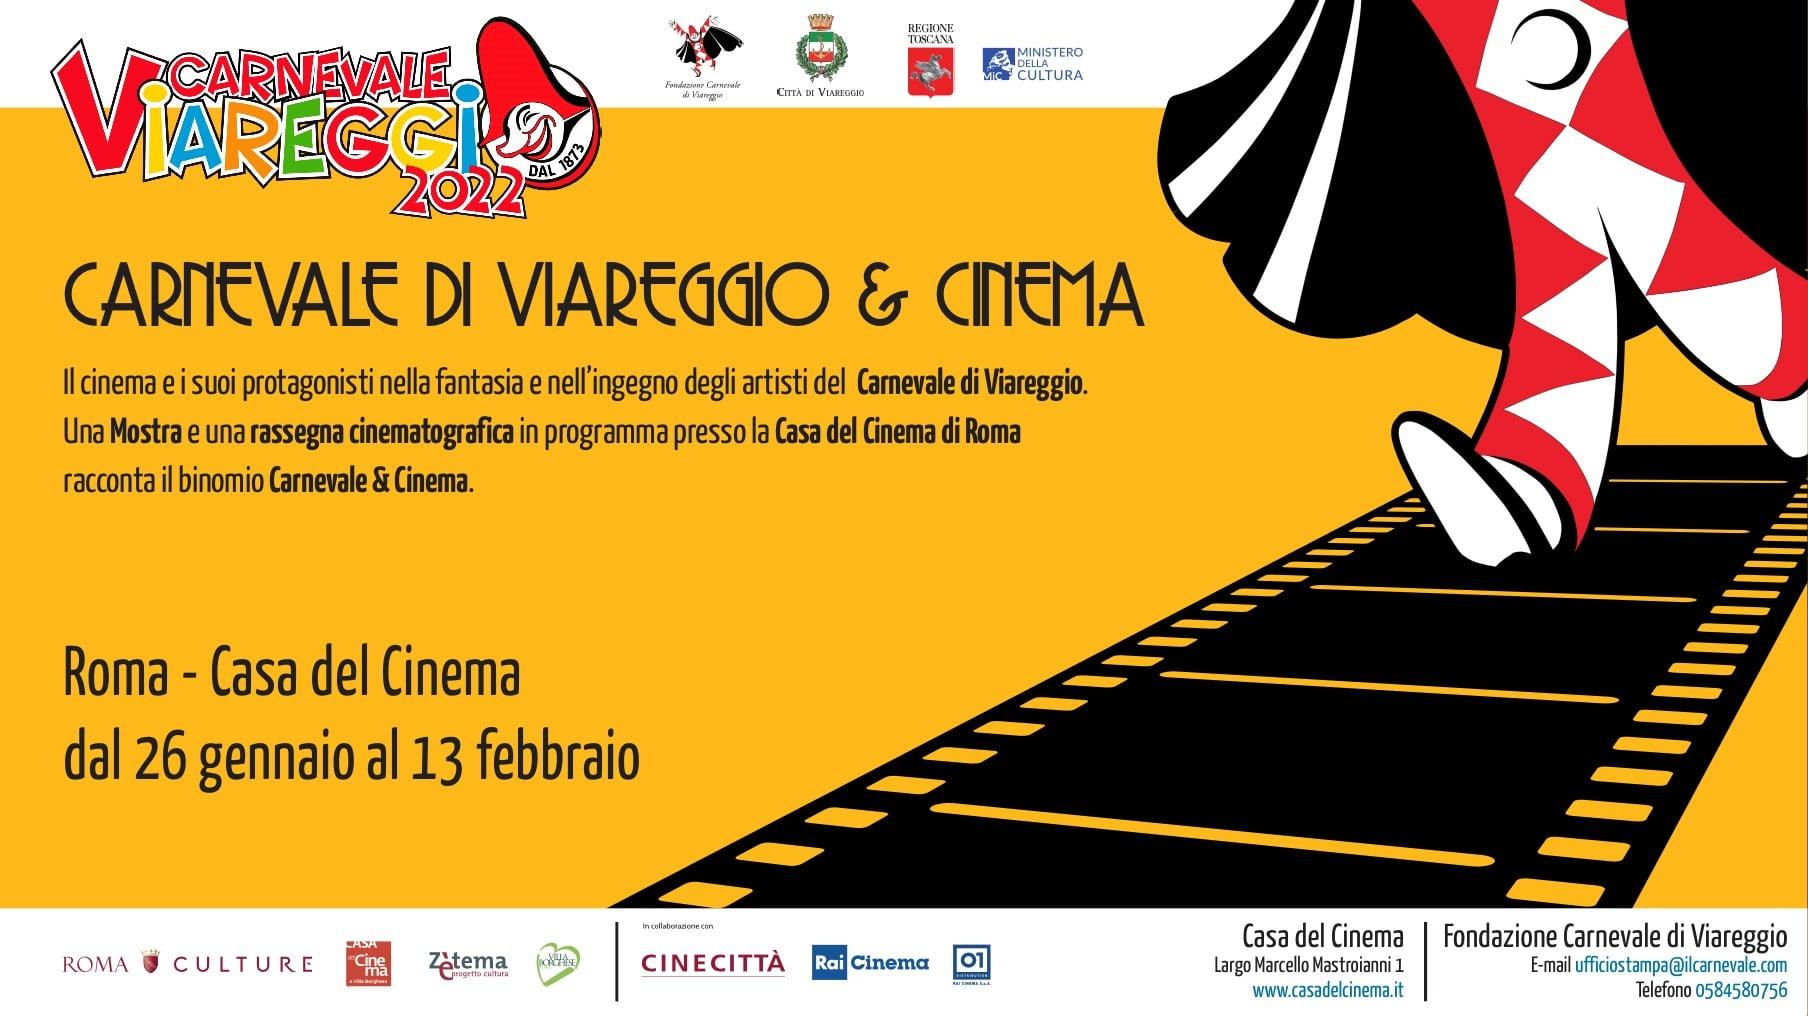 La mostra “Carnevale di Viareggio & Cinema”